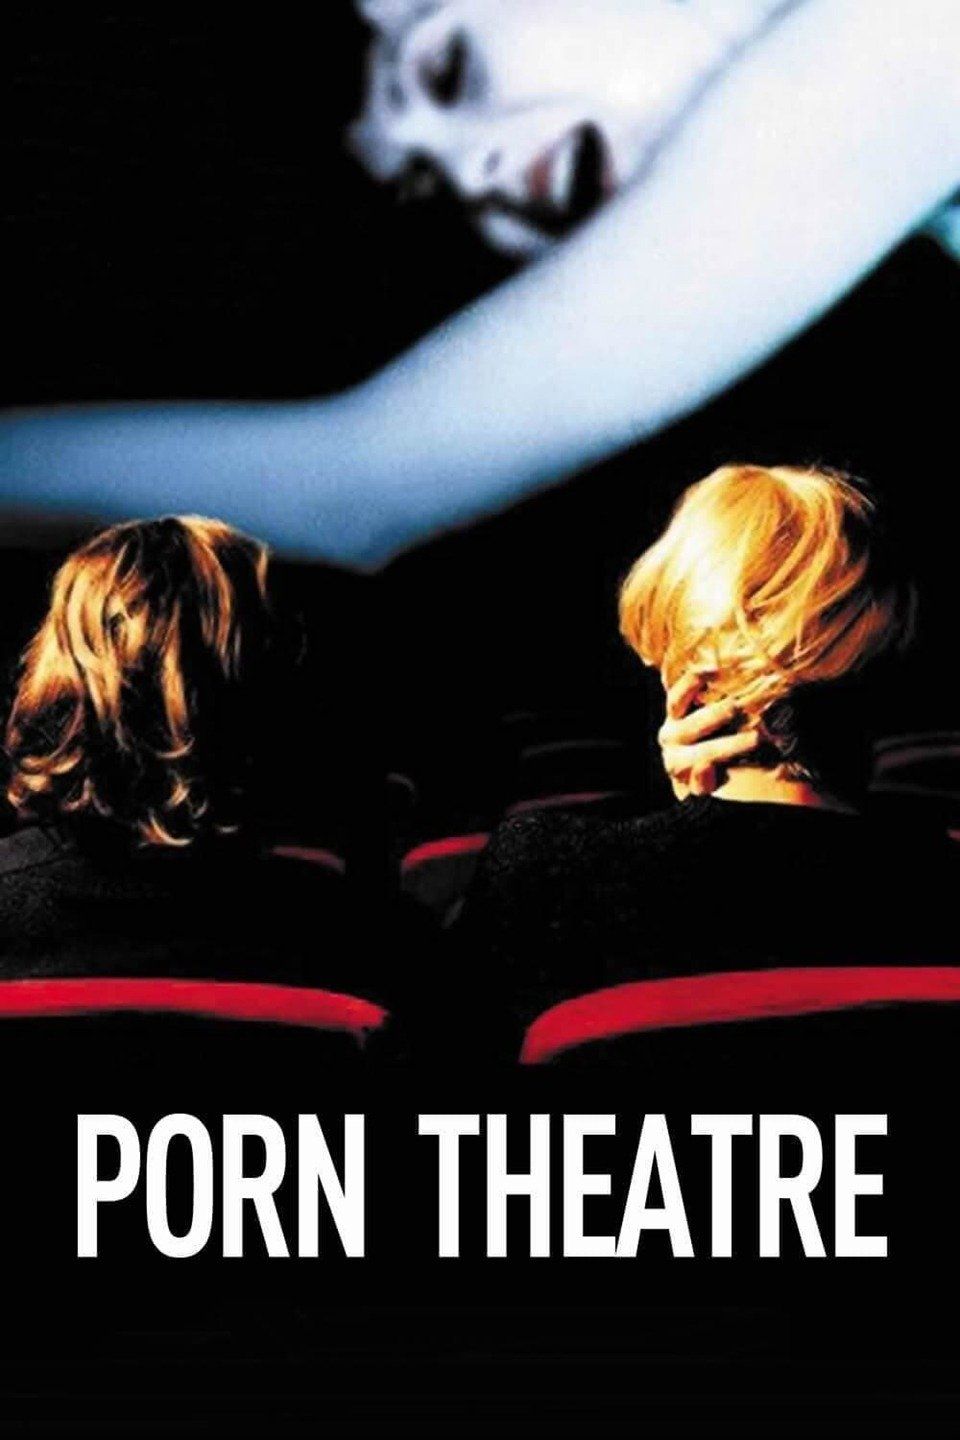 2002 Porn - Watch Porn Theatre (2002) Full Movie Free Online - Plex